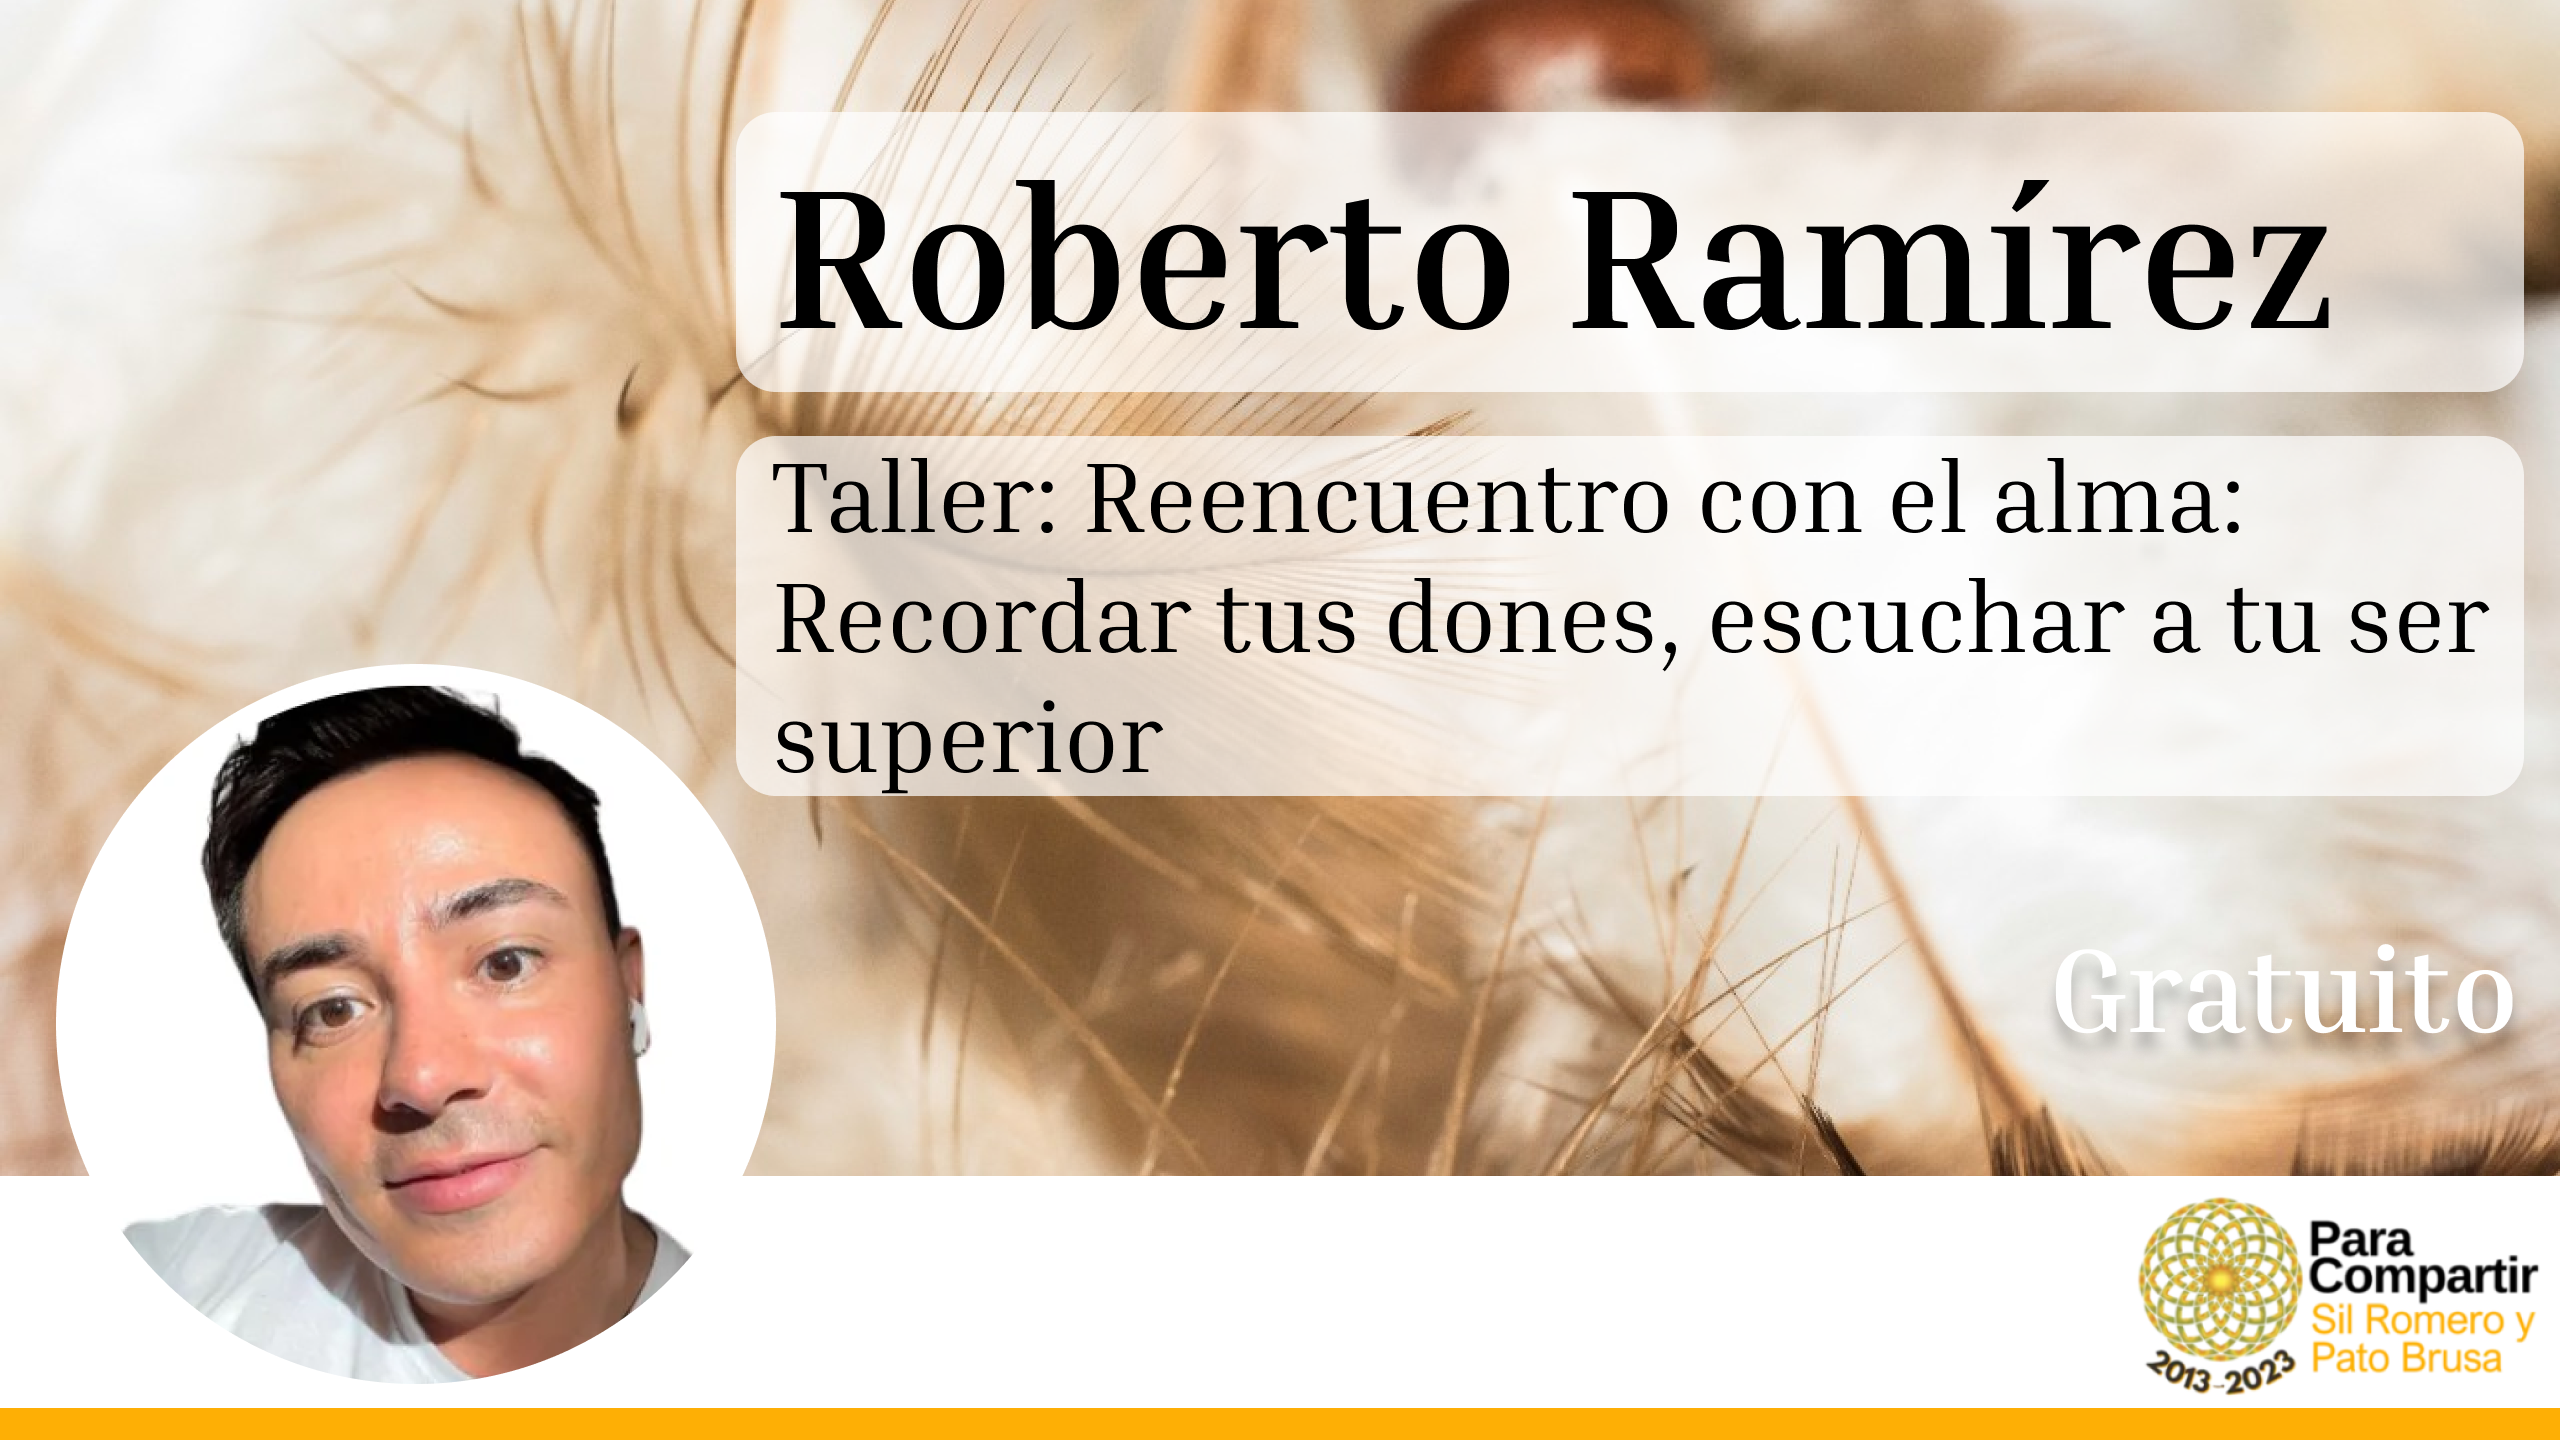 Taller GRATUITO Reencuentro con el alma: Recordar tus dones, escuchar a tu ser superior con Roberto Ramírez